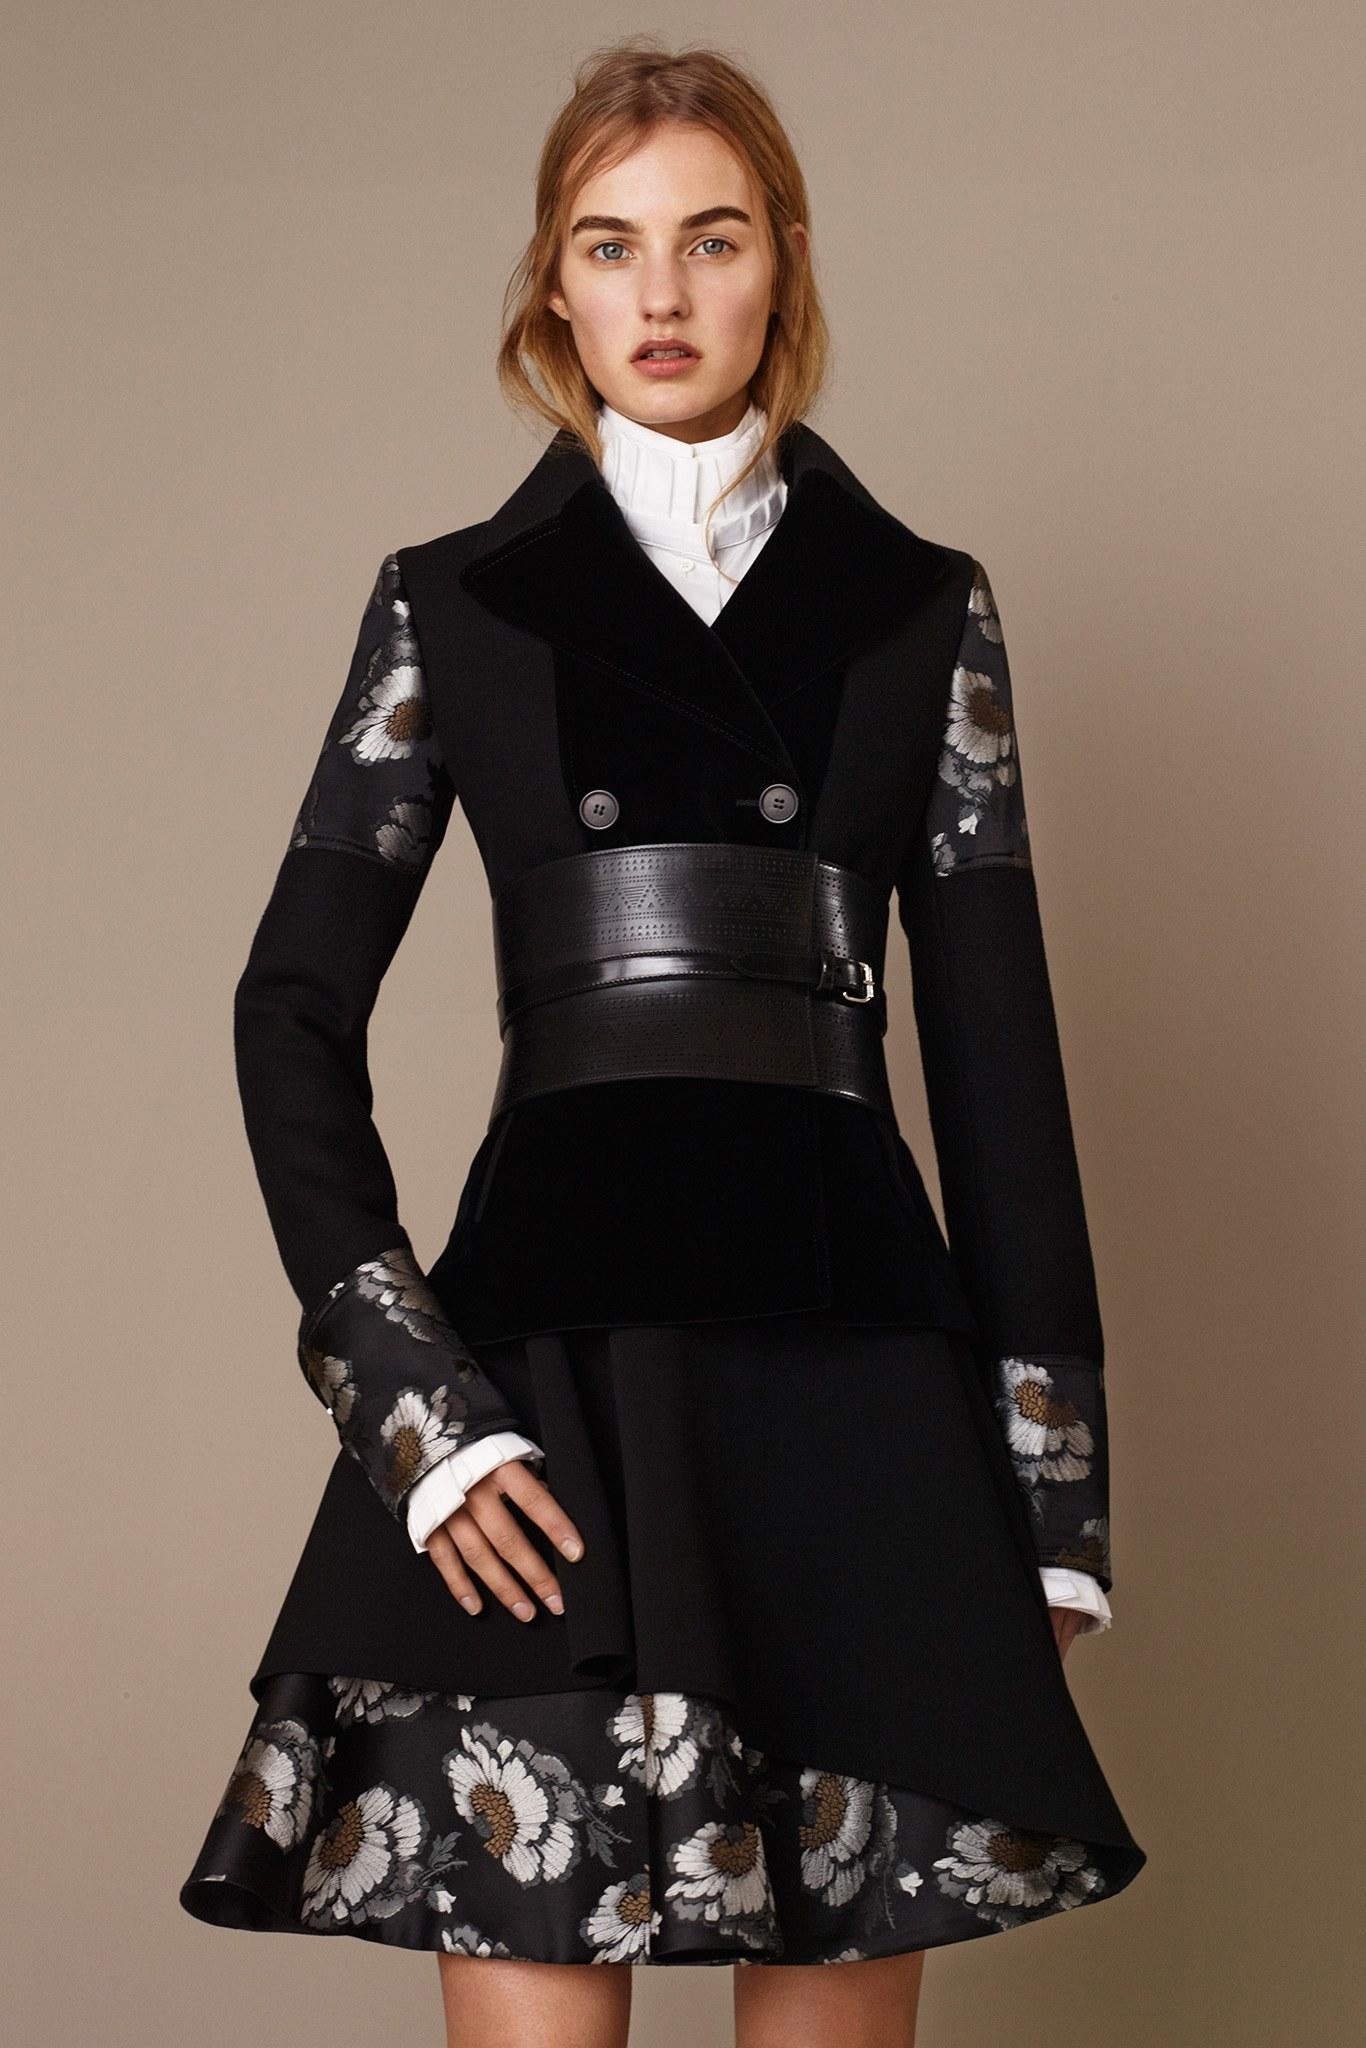 Women's New Alexander McQueen F/W 2015 Wool Dress  $2425 Sz IT 46